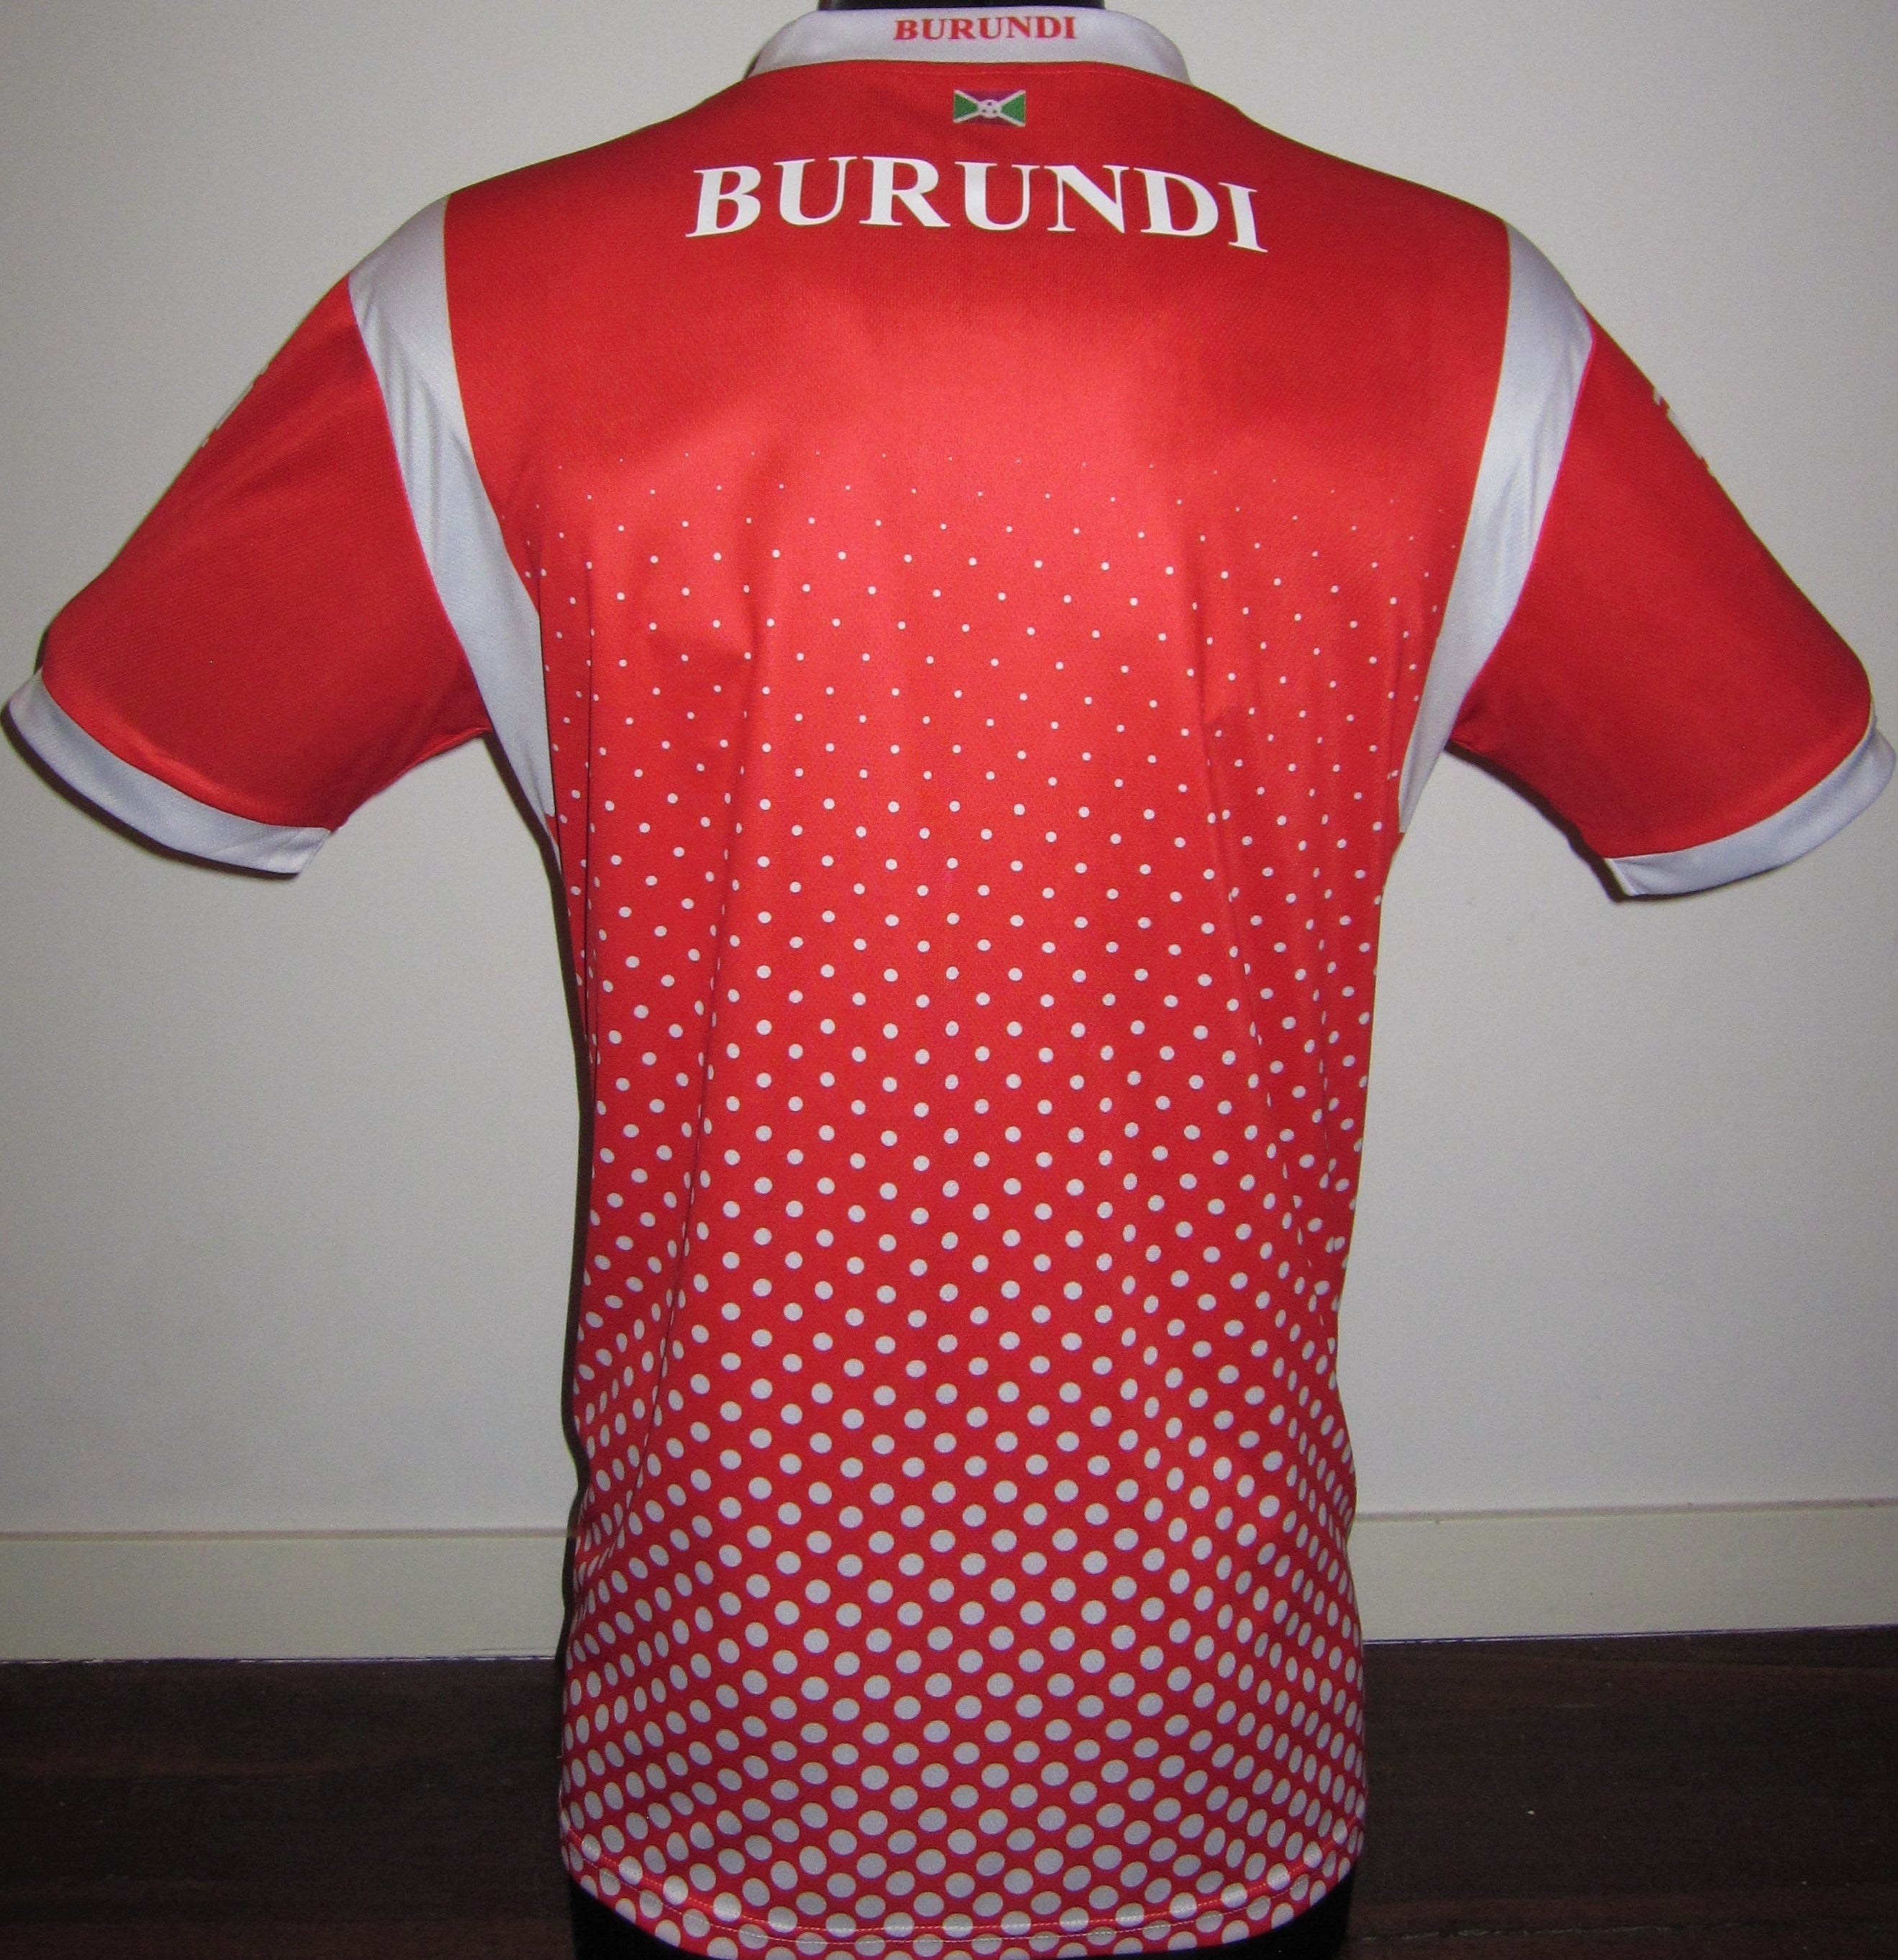 Burundi 2019-20 Home Jersey/Shirt